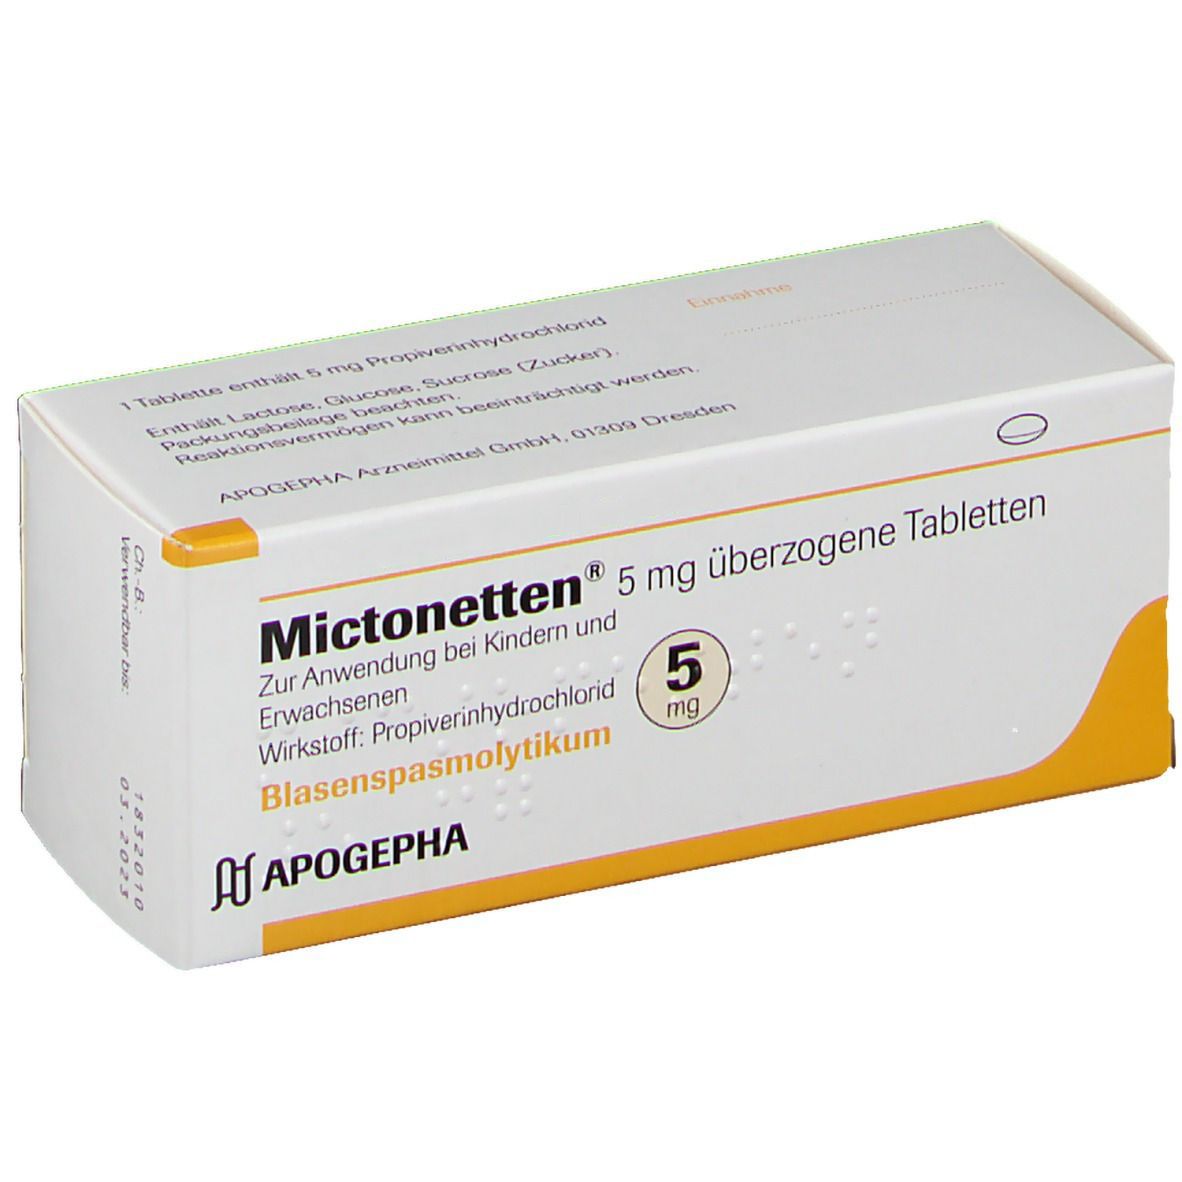 Mictonetten® 5 mg